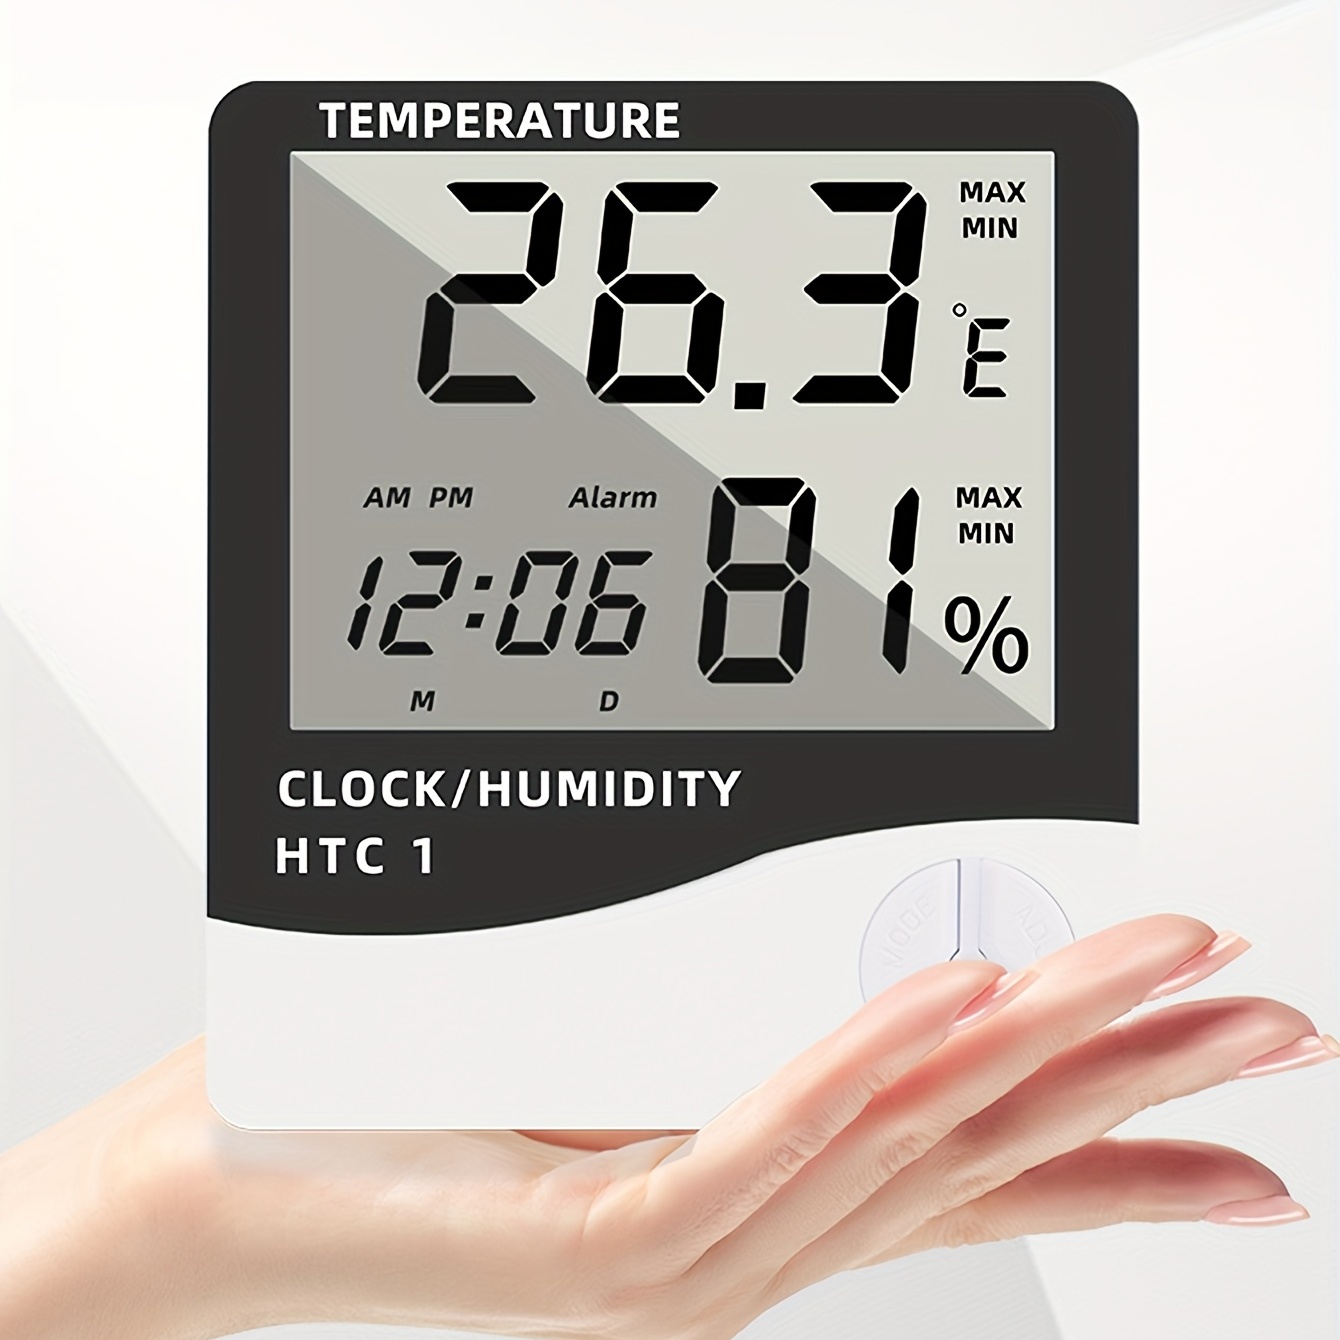 Thermomètre Hygromètre Intérieur Numérique - Haute Précision